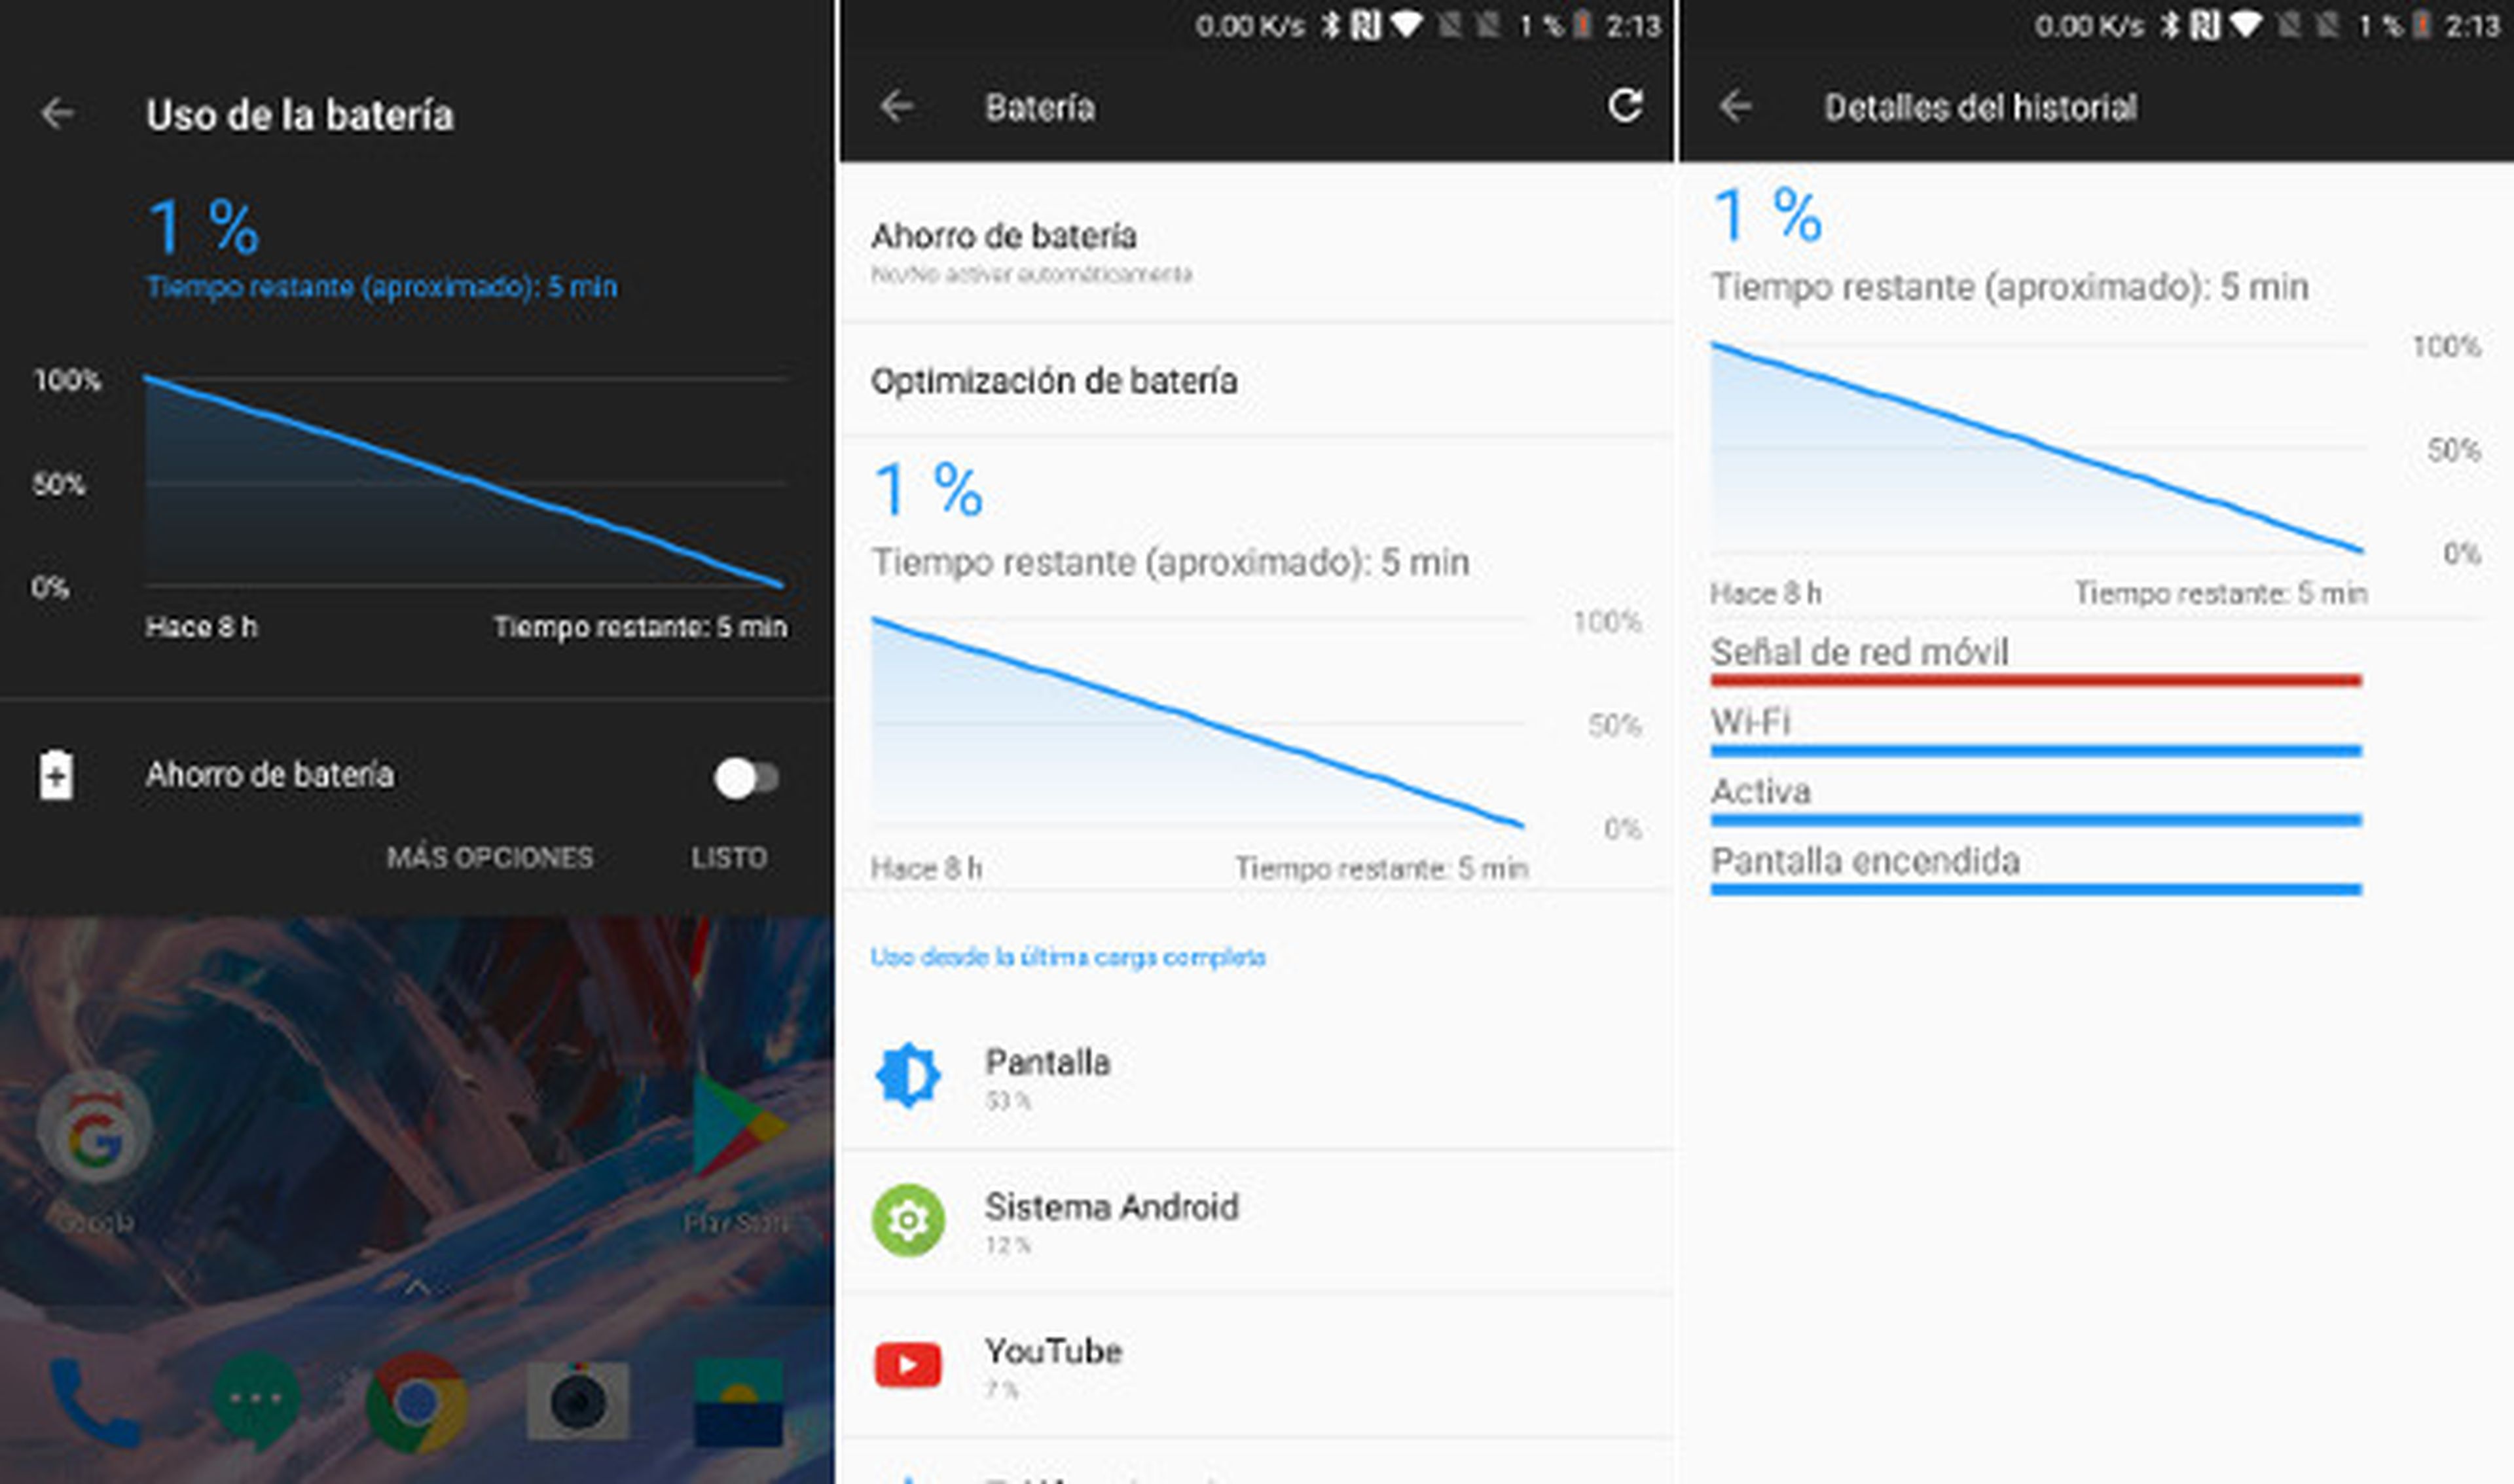 La autonomía del OnePlus 5 alcanza las 11 h 49 min en uso intensivo, 7 h y 48 min en PCMark y 8 h y 5 min con YouTube.